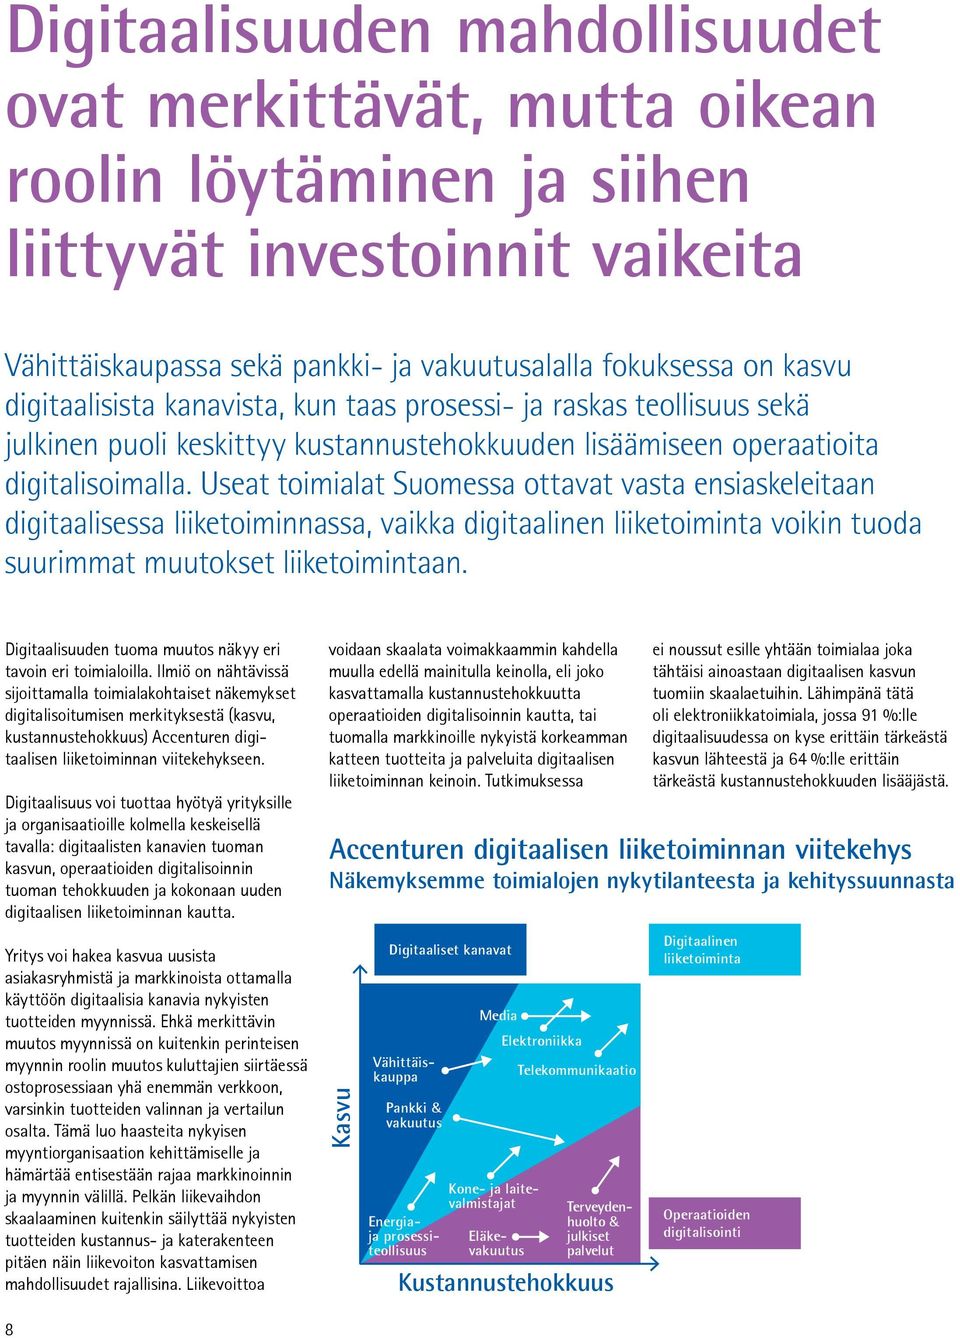 Useat toimialat Suomessa ottavat vasta ensiaskeleitaan digitaalisessa liiketoiminnassa, vaikka digitaalinen liiketoiminta voikin tuoda suurimmat muutokset liiketoimintaan.